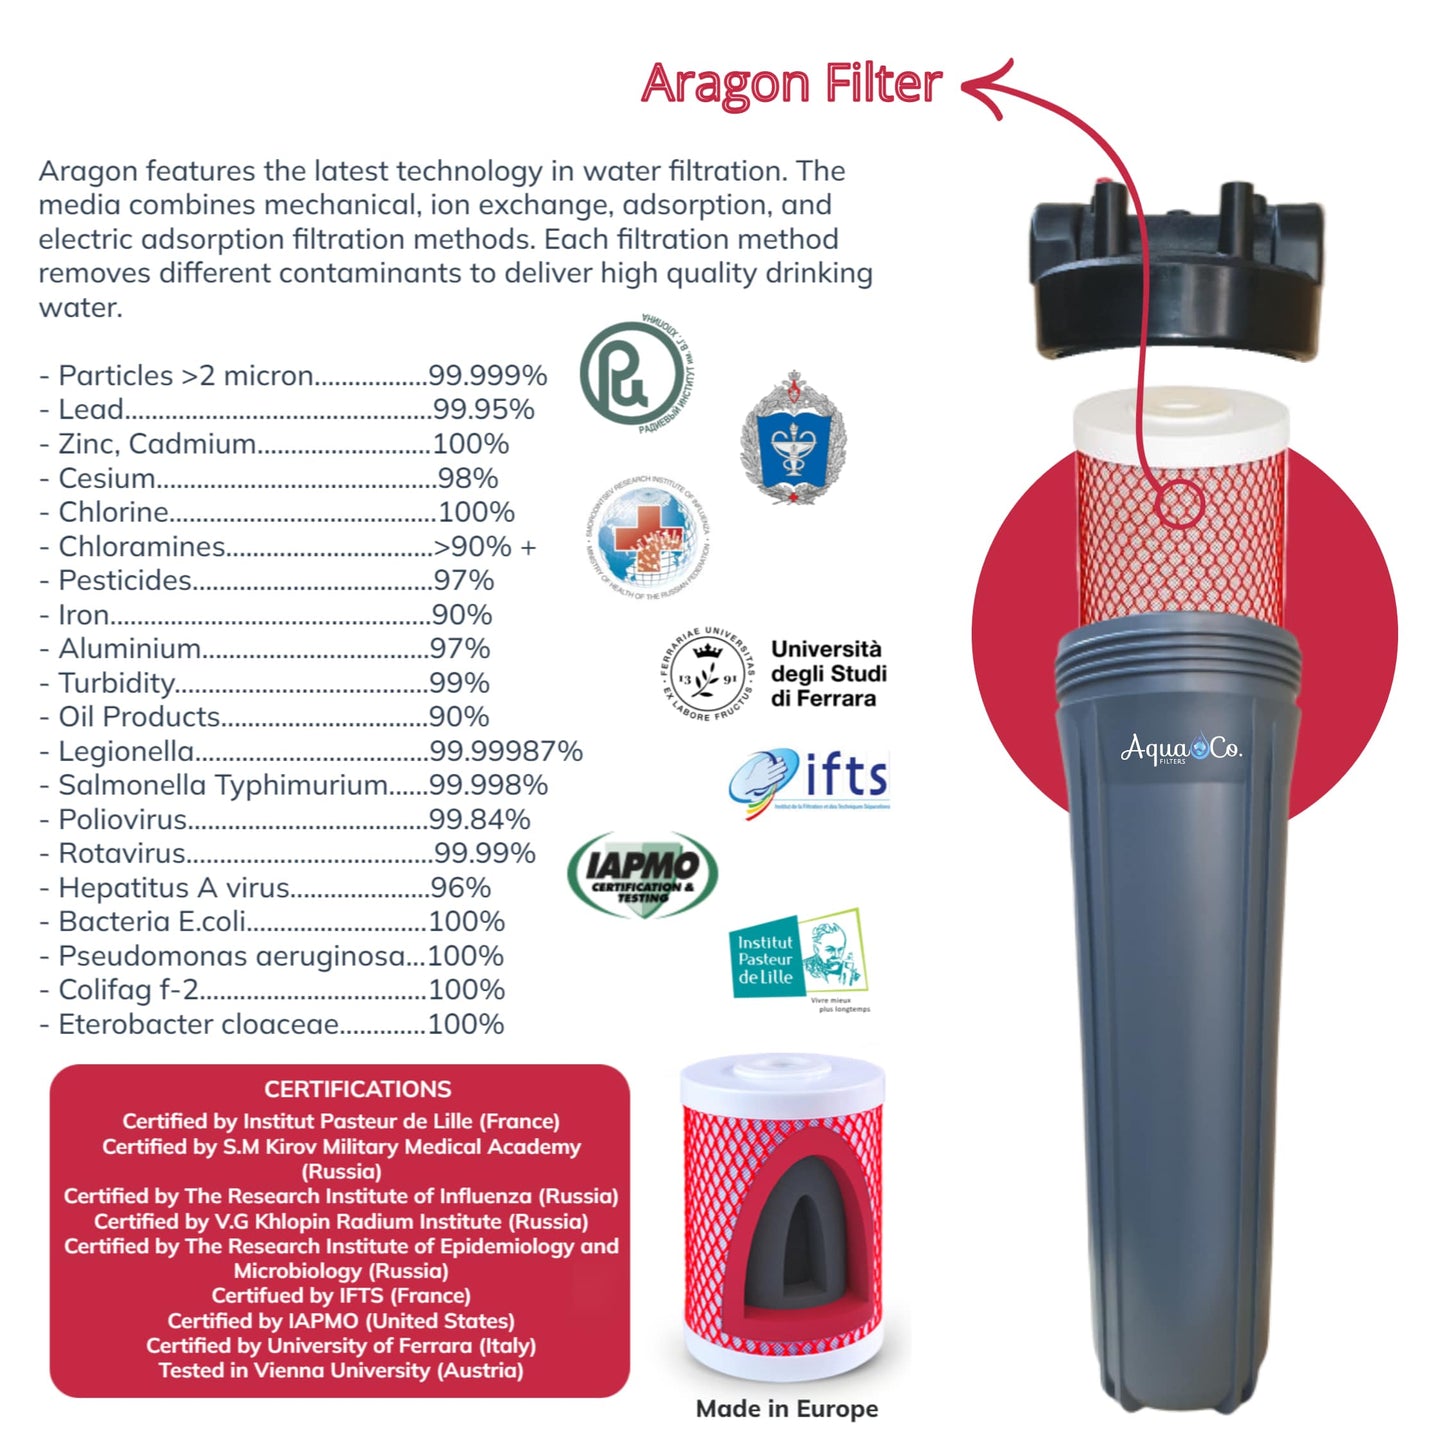 Geyser technology: Aragon